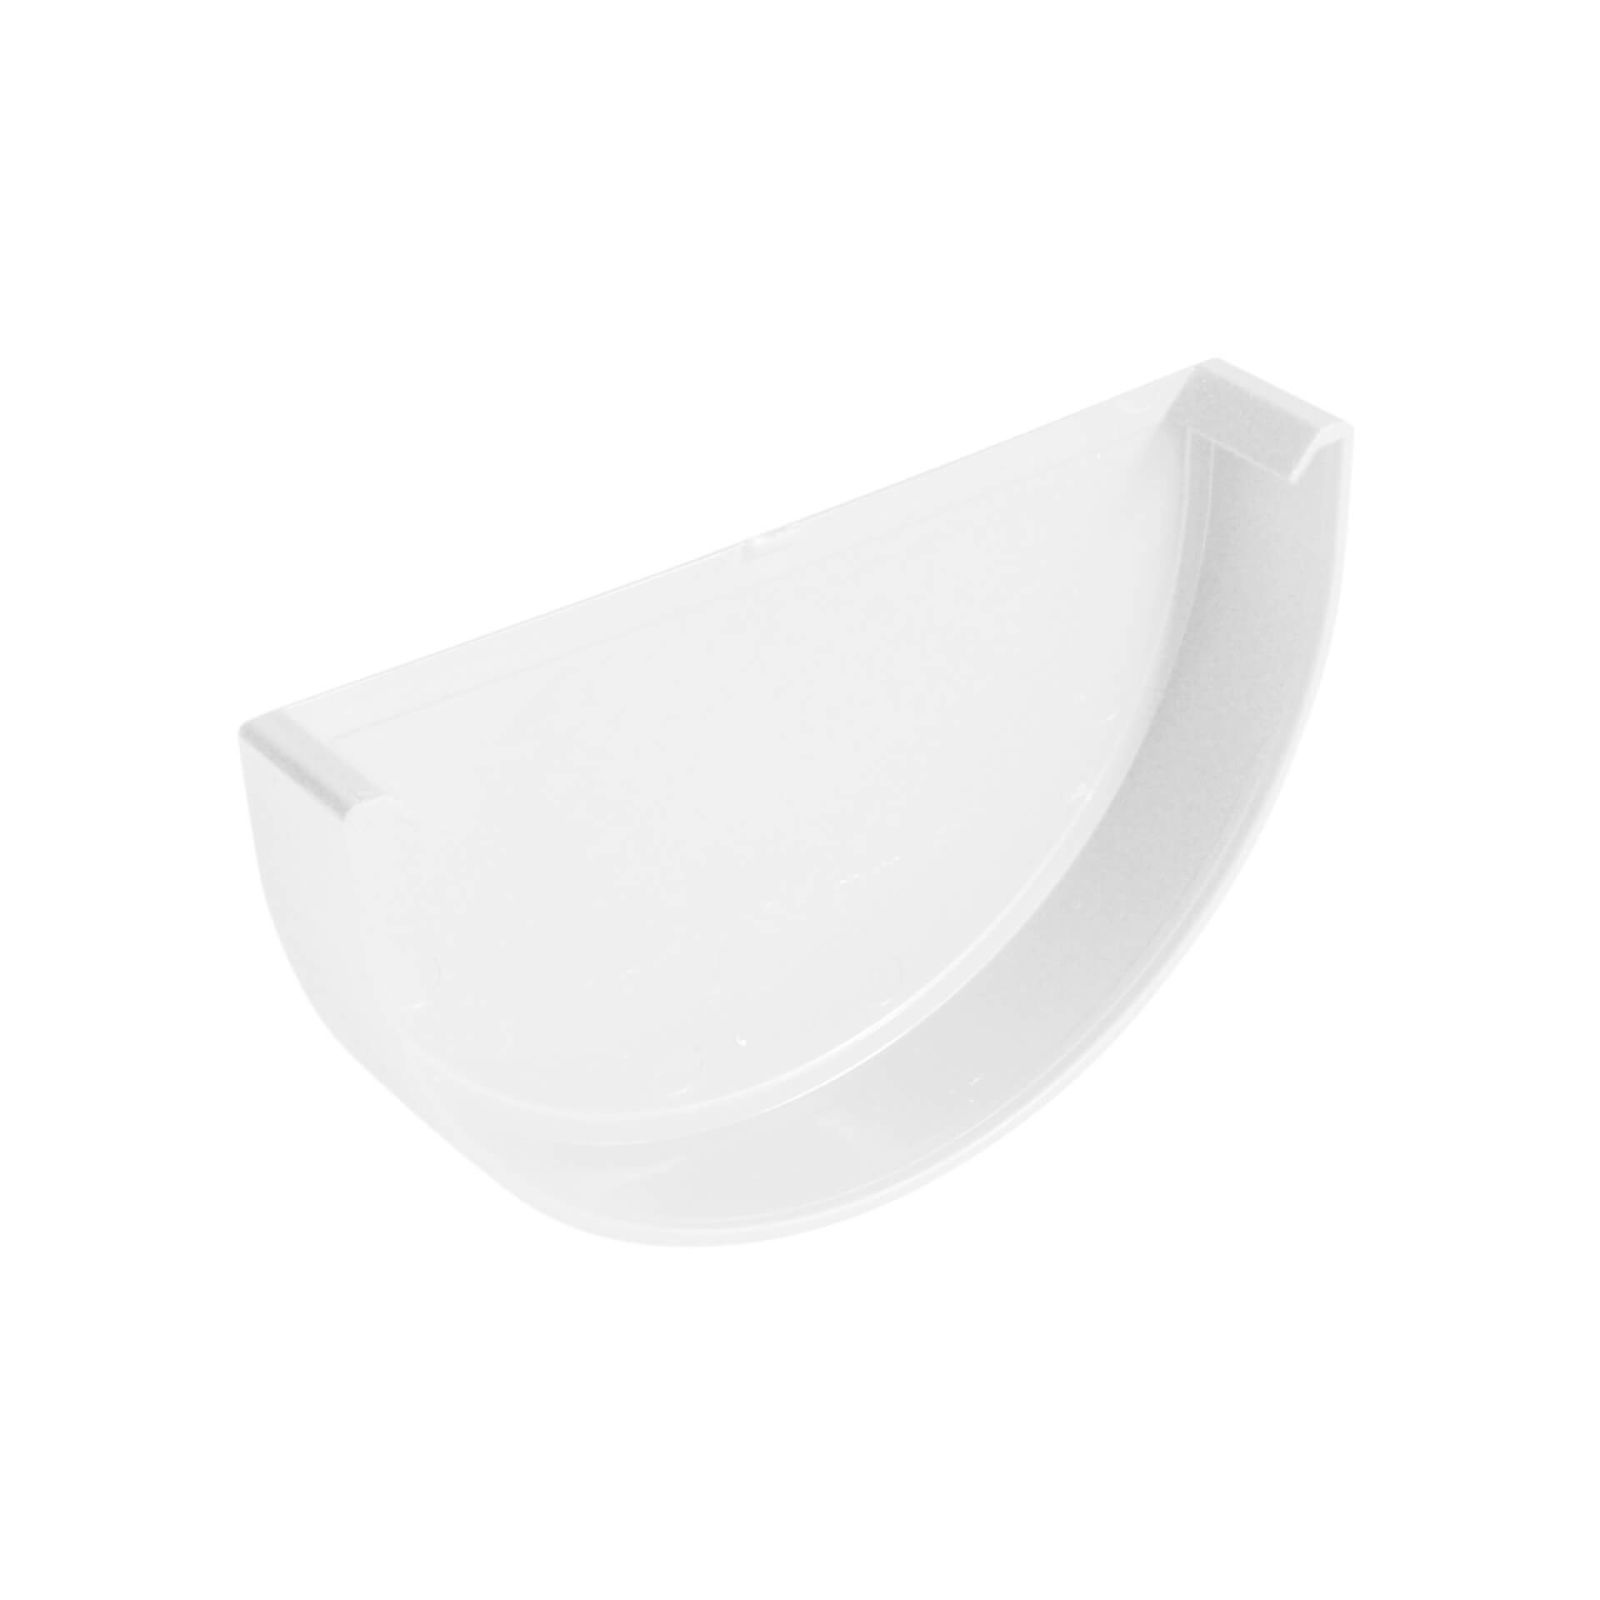 Kunststoff Dachrinnen Sparpaket 4 m | Ø 125/90 mm | Farbe Weiß #3